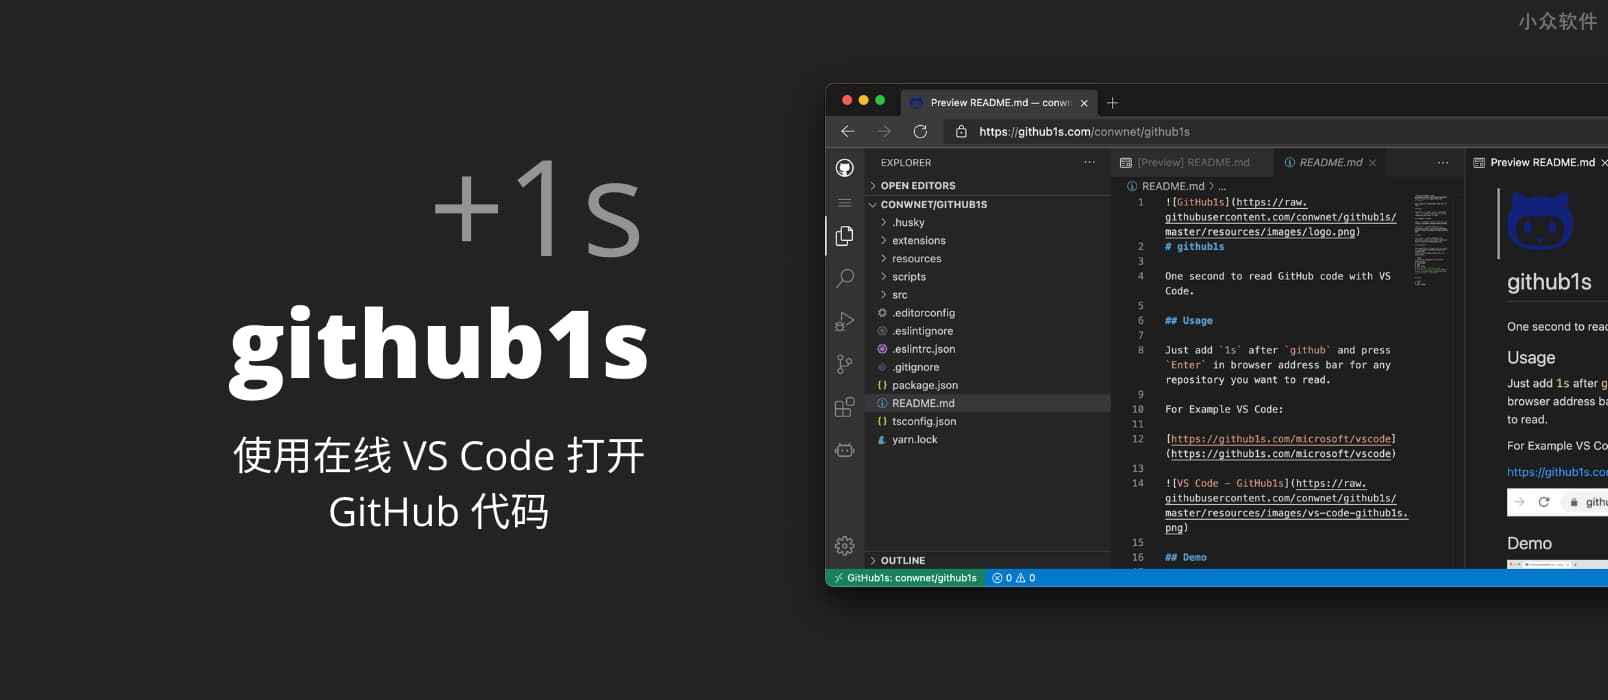 github1s - 为 GitHub +1s，使用在线 VS Code 打开 GitHub 上的代码 1